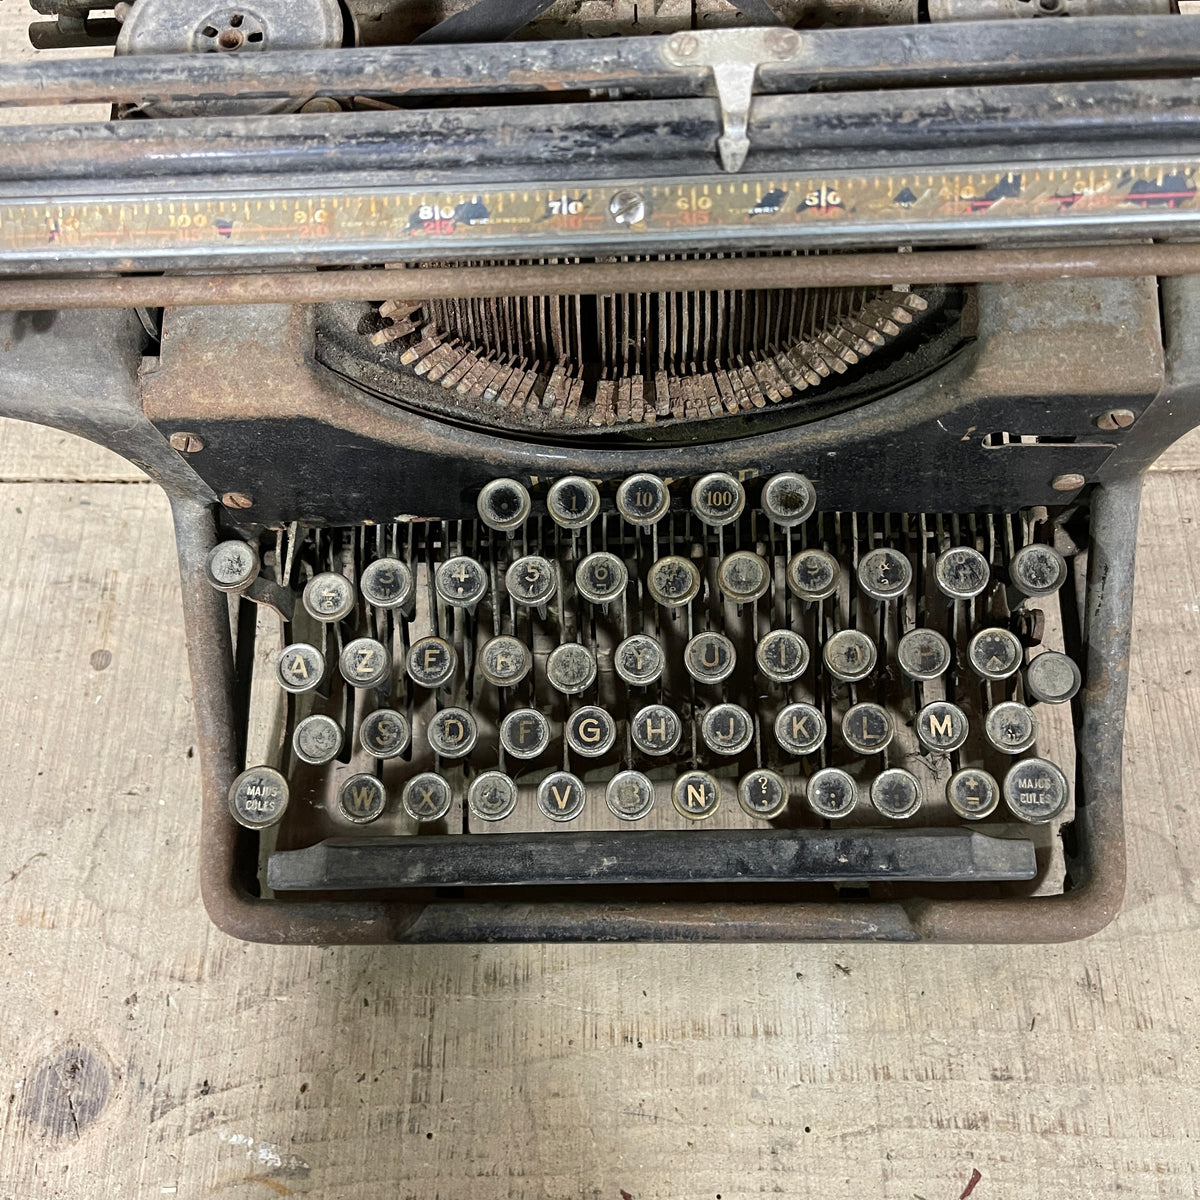 Machine à écrire Underwood en fer émaillé rouge, vers 19…